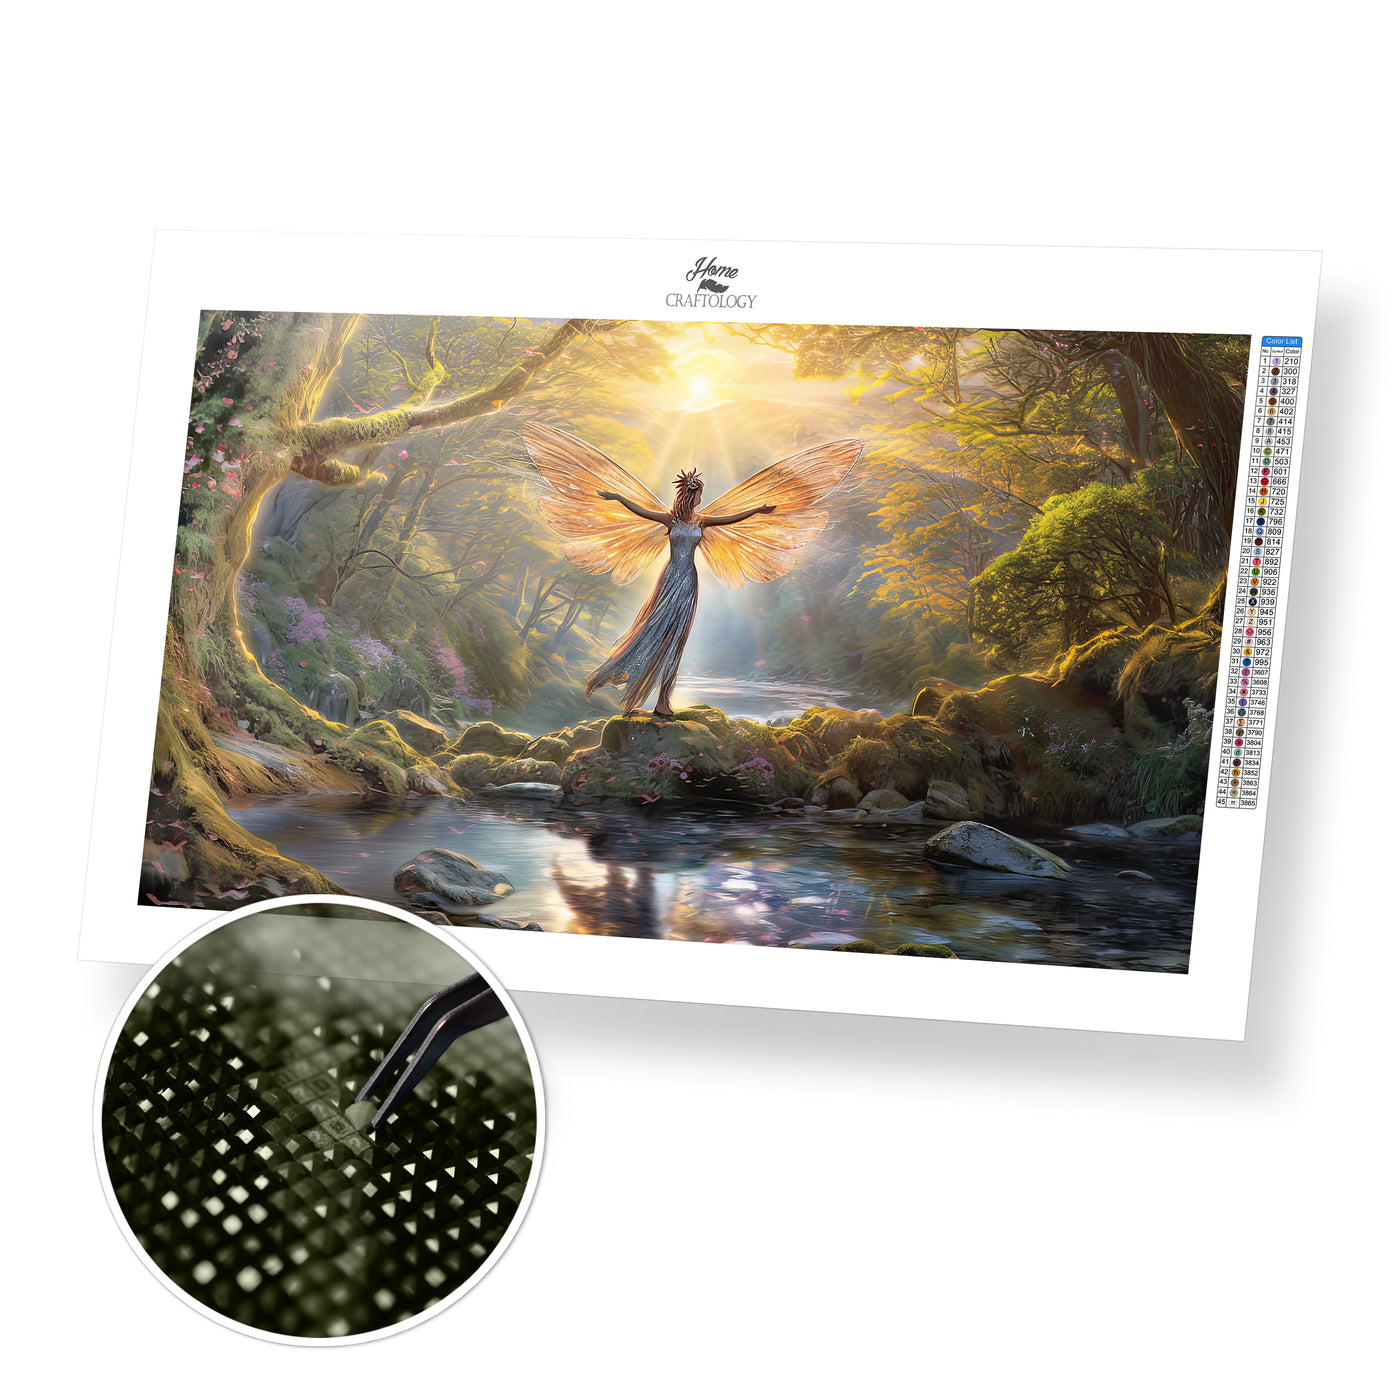 Fairy by the Swamp - Premium Diamond Painting Kit